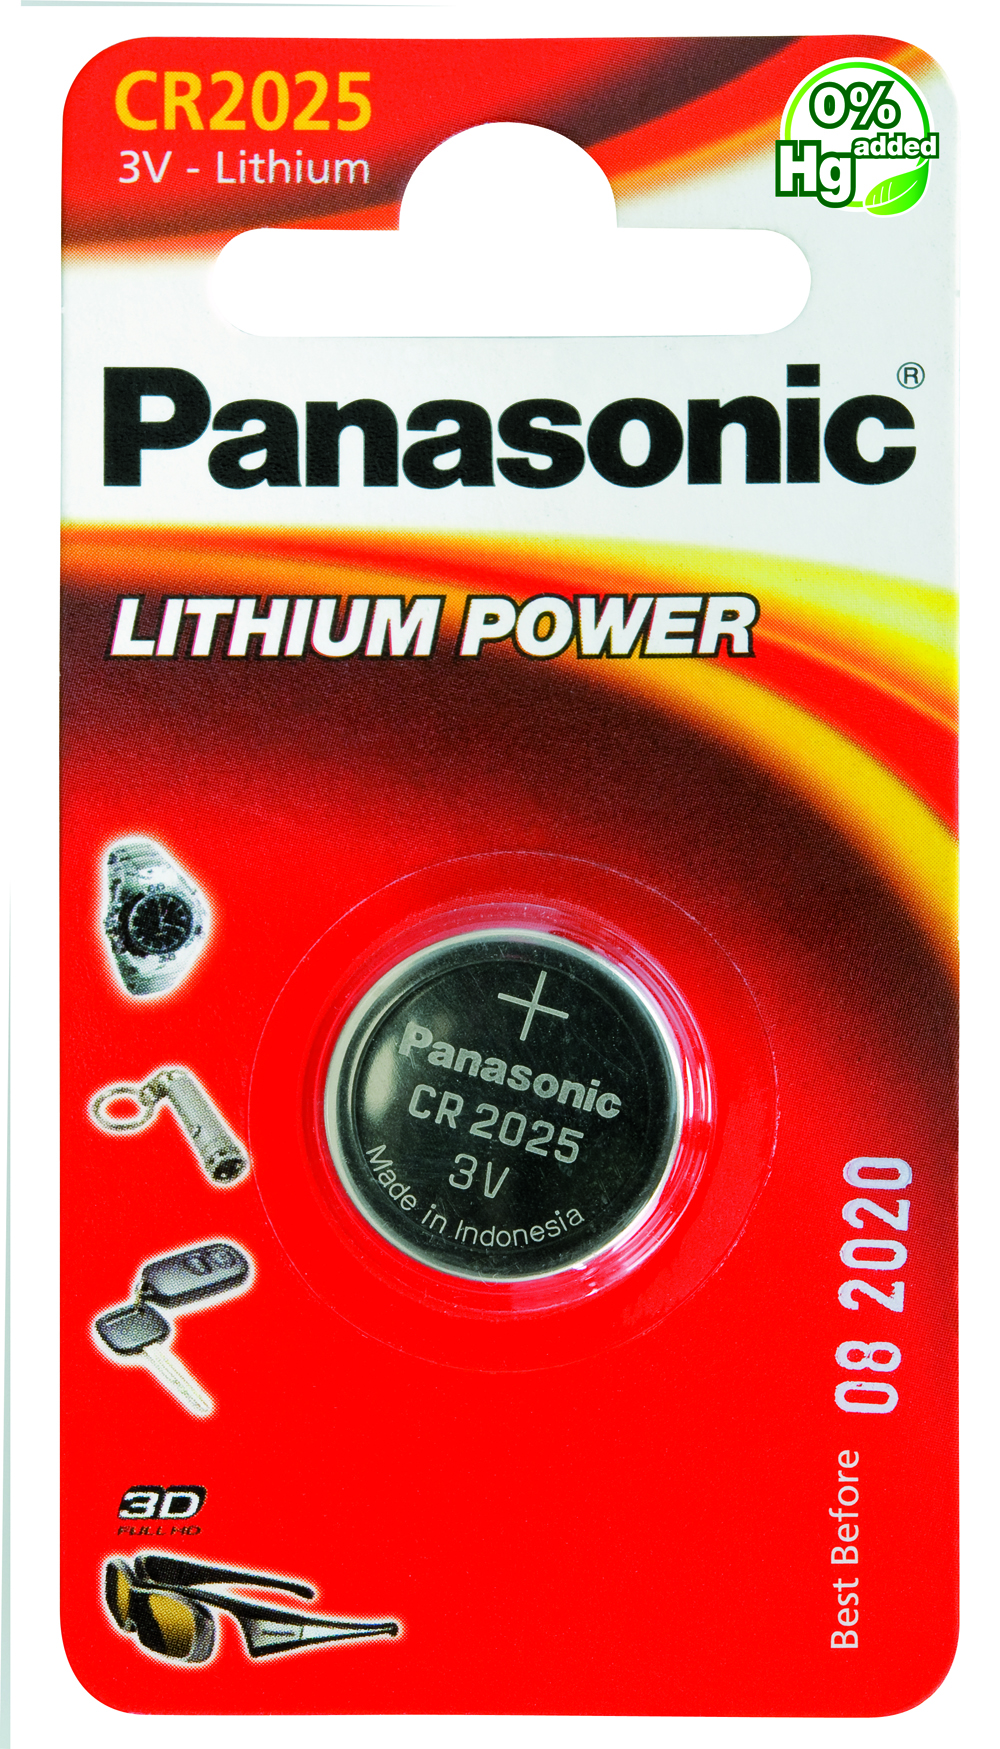 Panasonic Lithium Power 1x CR2025